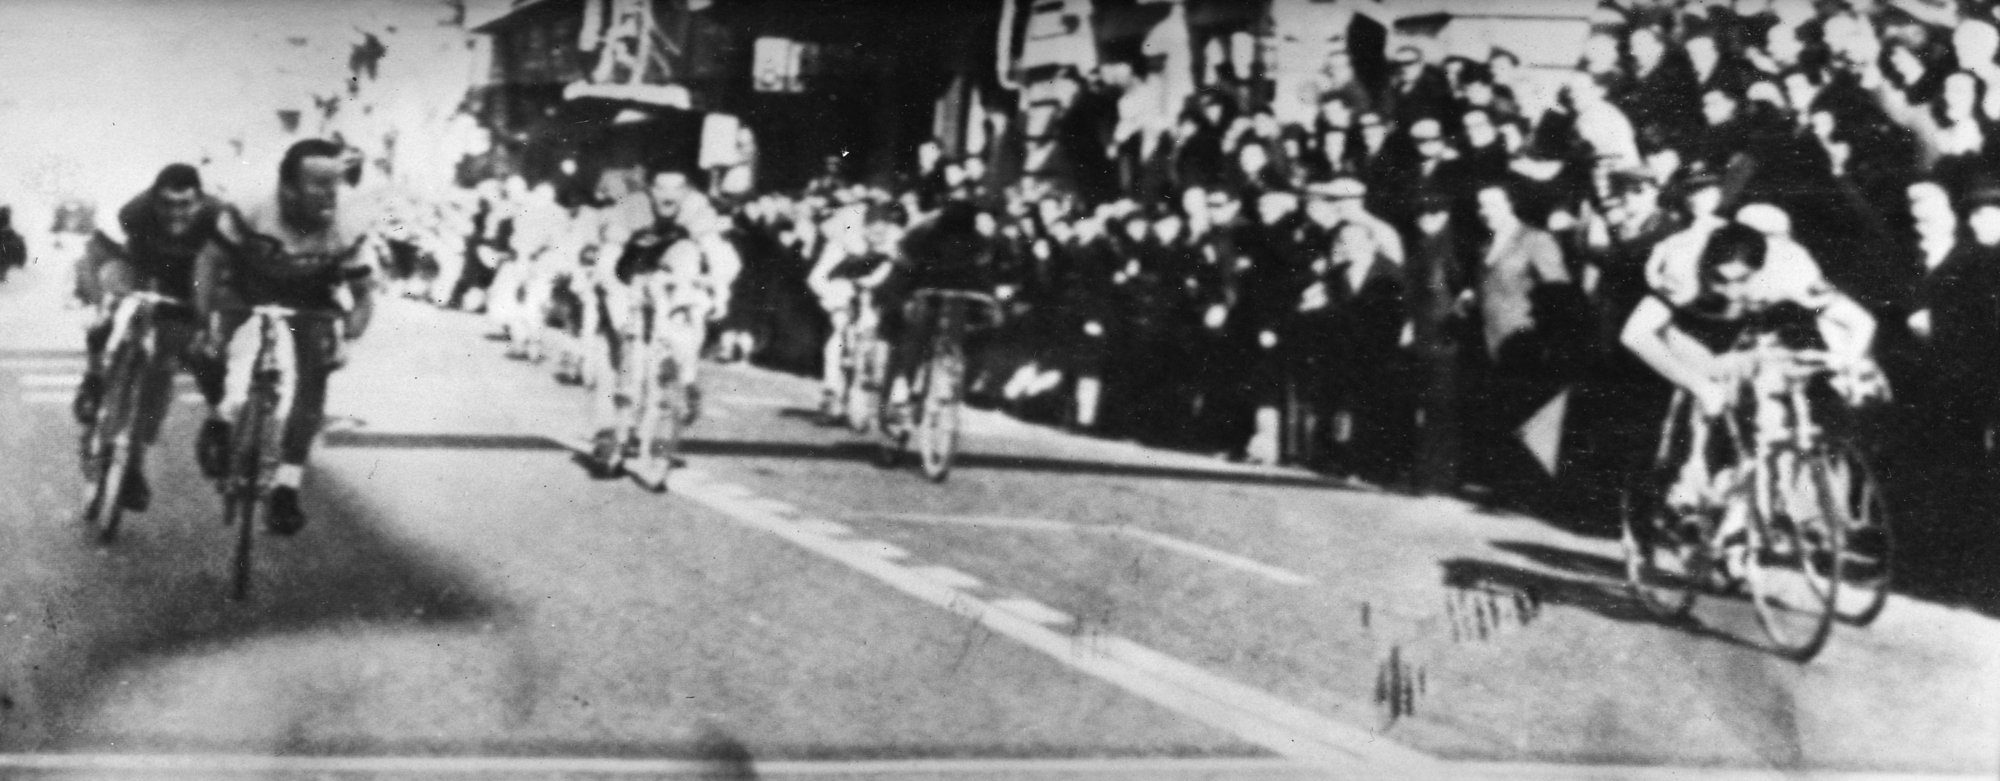 Eddy Merckx vond zijn eerste overwinning in Milaan-Sanremo, in 1966, zijn mooiste ooit., Belga Image